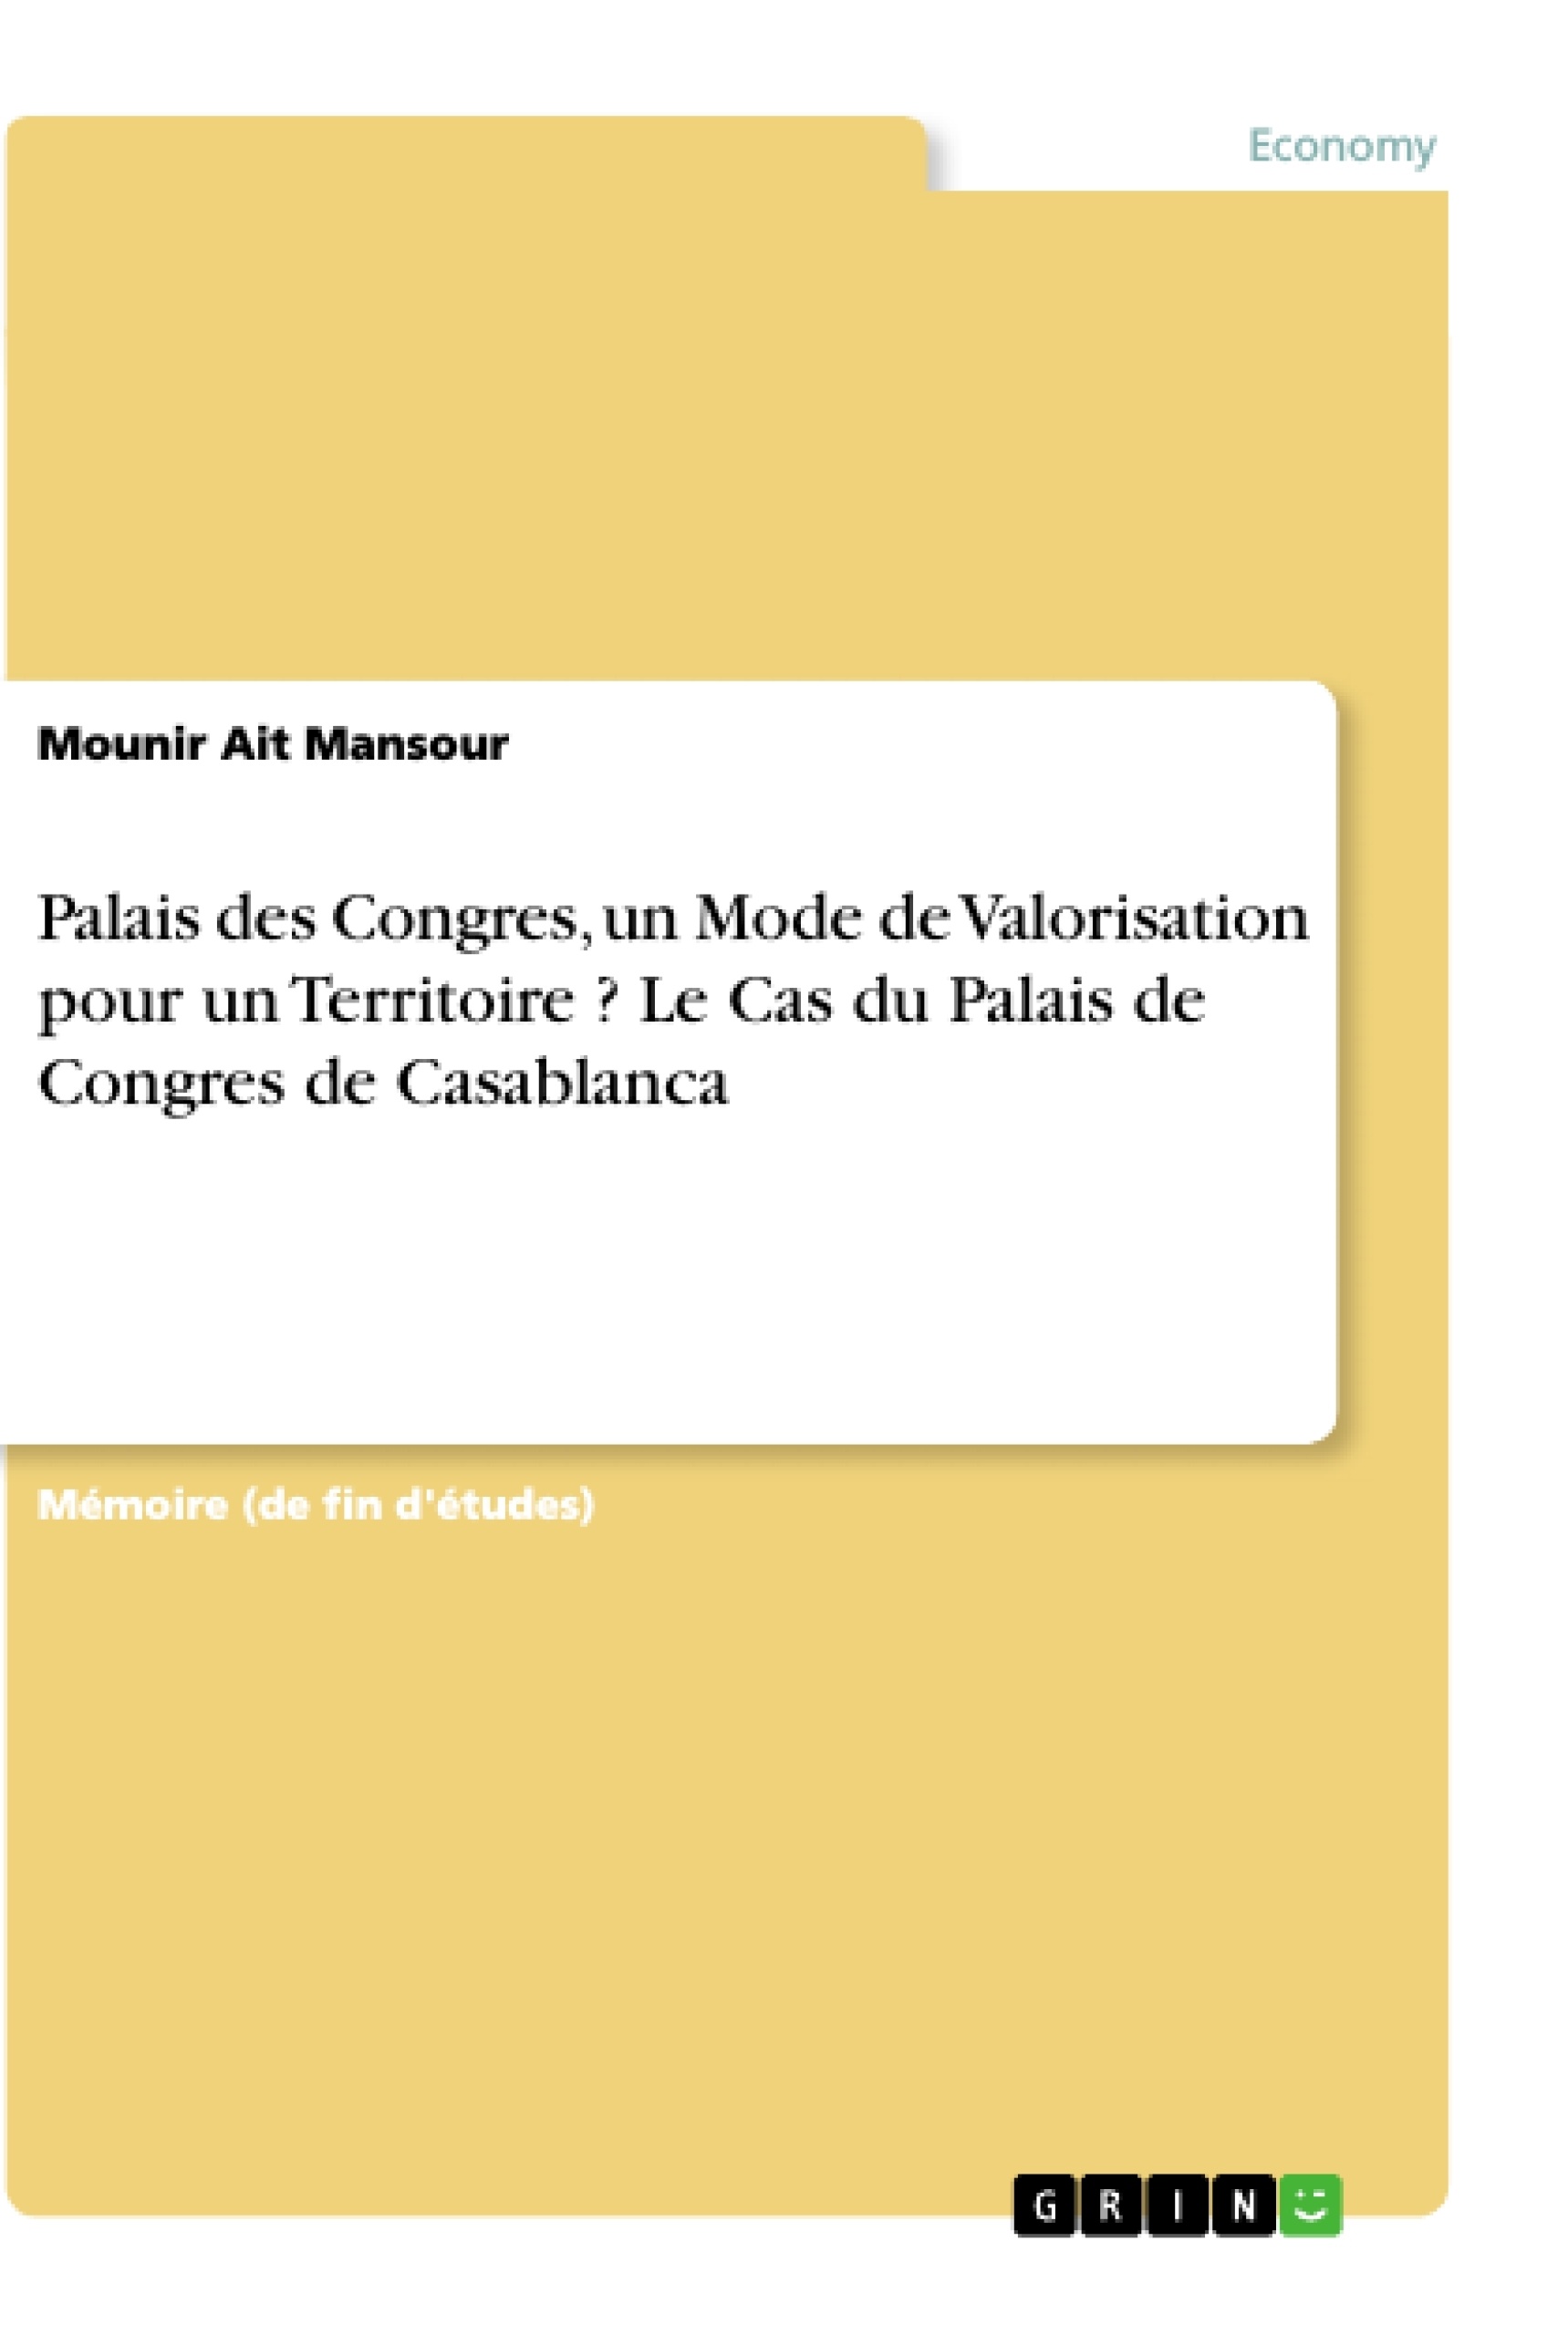 Title: Palais des Congres, un Mode de Valorisation pour un Territoire ? Le Cas du Palais de Congres de Casablanca